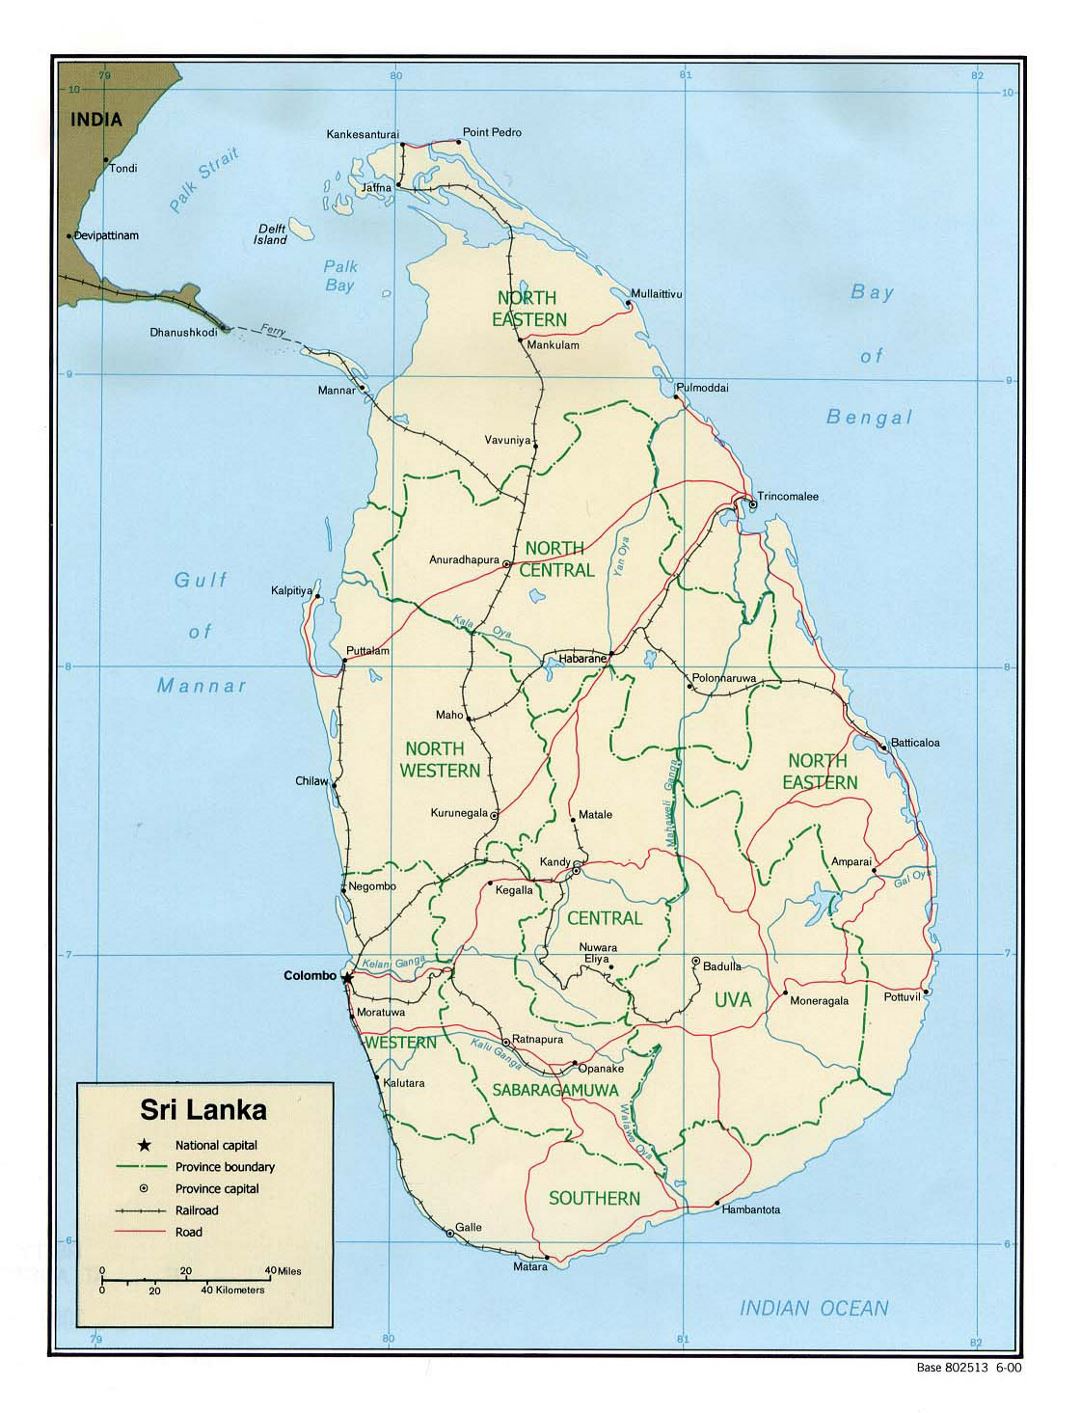 Detallado mapa político y administrativo de Sri Lanka con carreteras, ferrocarriles y principales ciudades - 2000